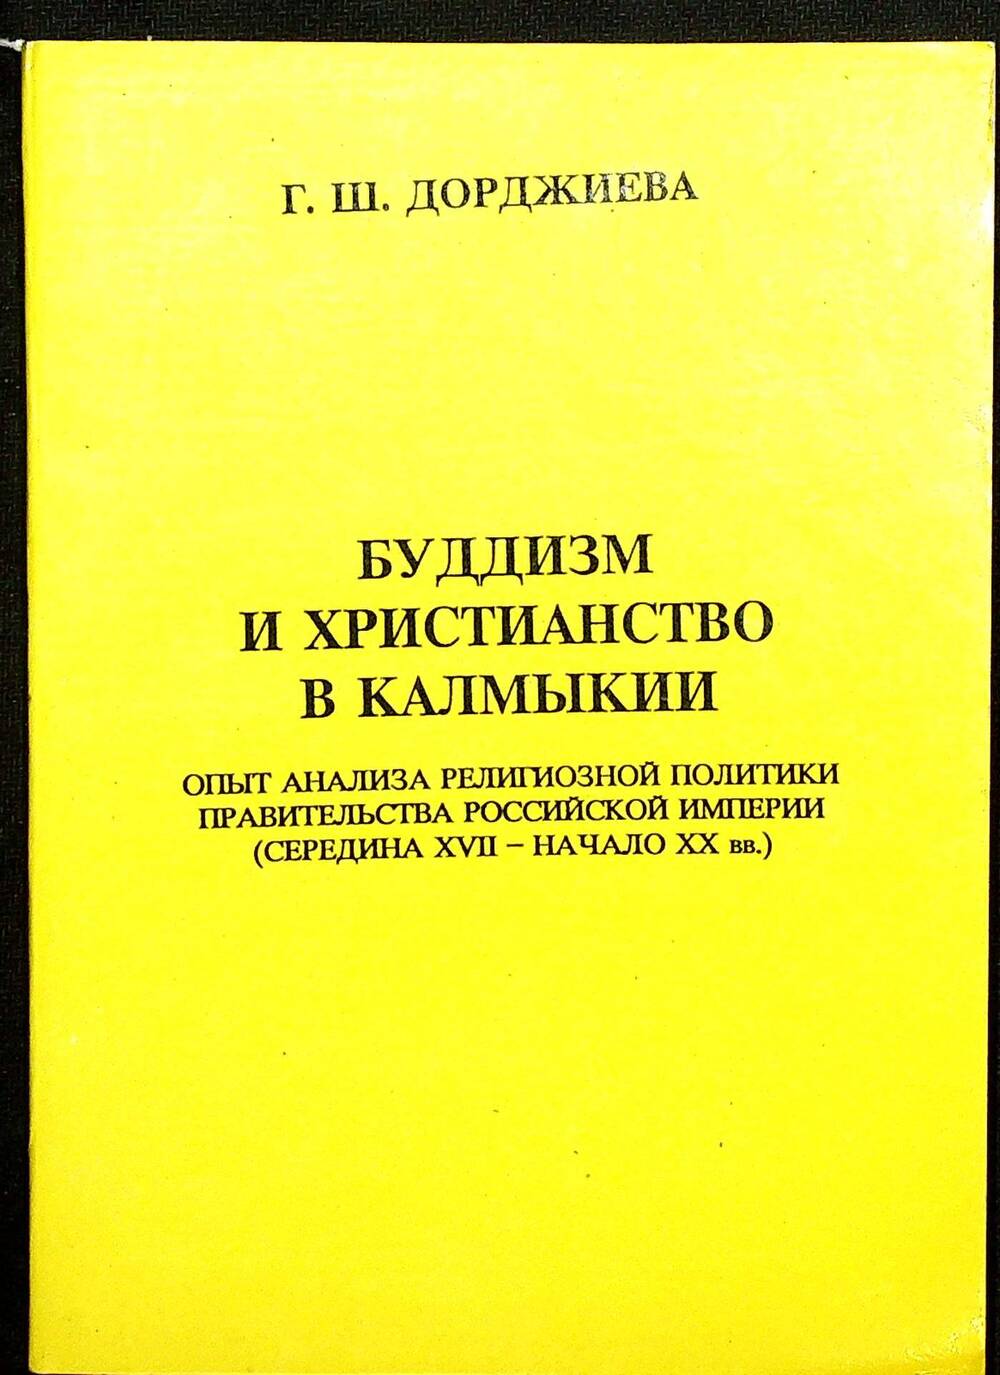 Книга. Дорджиева Г.Ш. «Буддизм и христианство в Калмыкии» Элиста: АПП «Джангар», 1995 г.